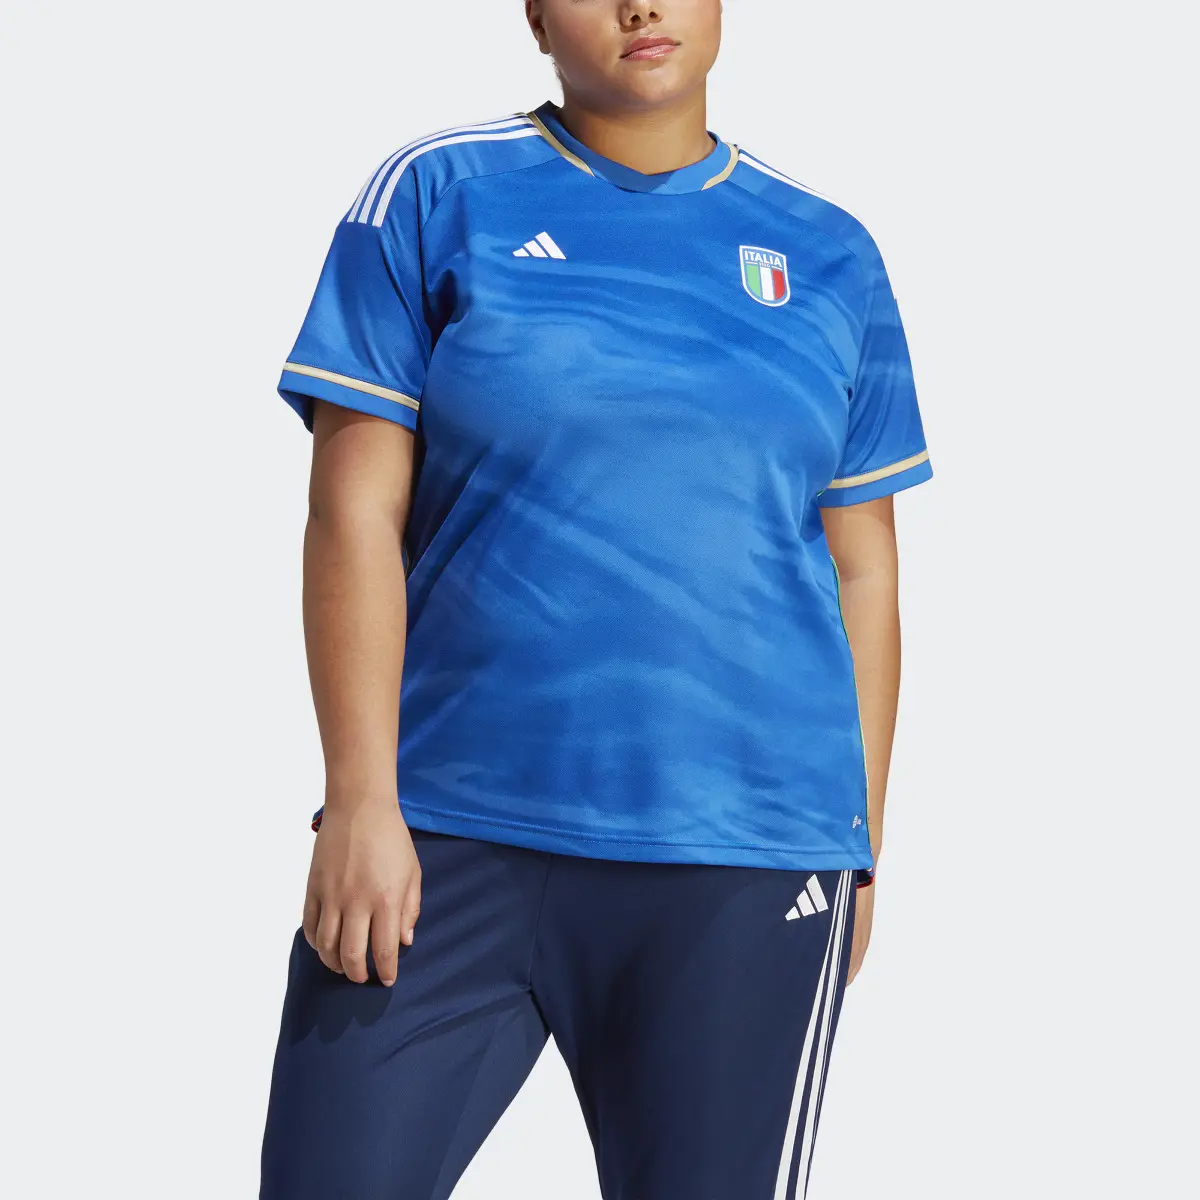 Adidas Camisola Principal 23 da Seleção Feminina da Itália (Plus Size). 1